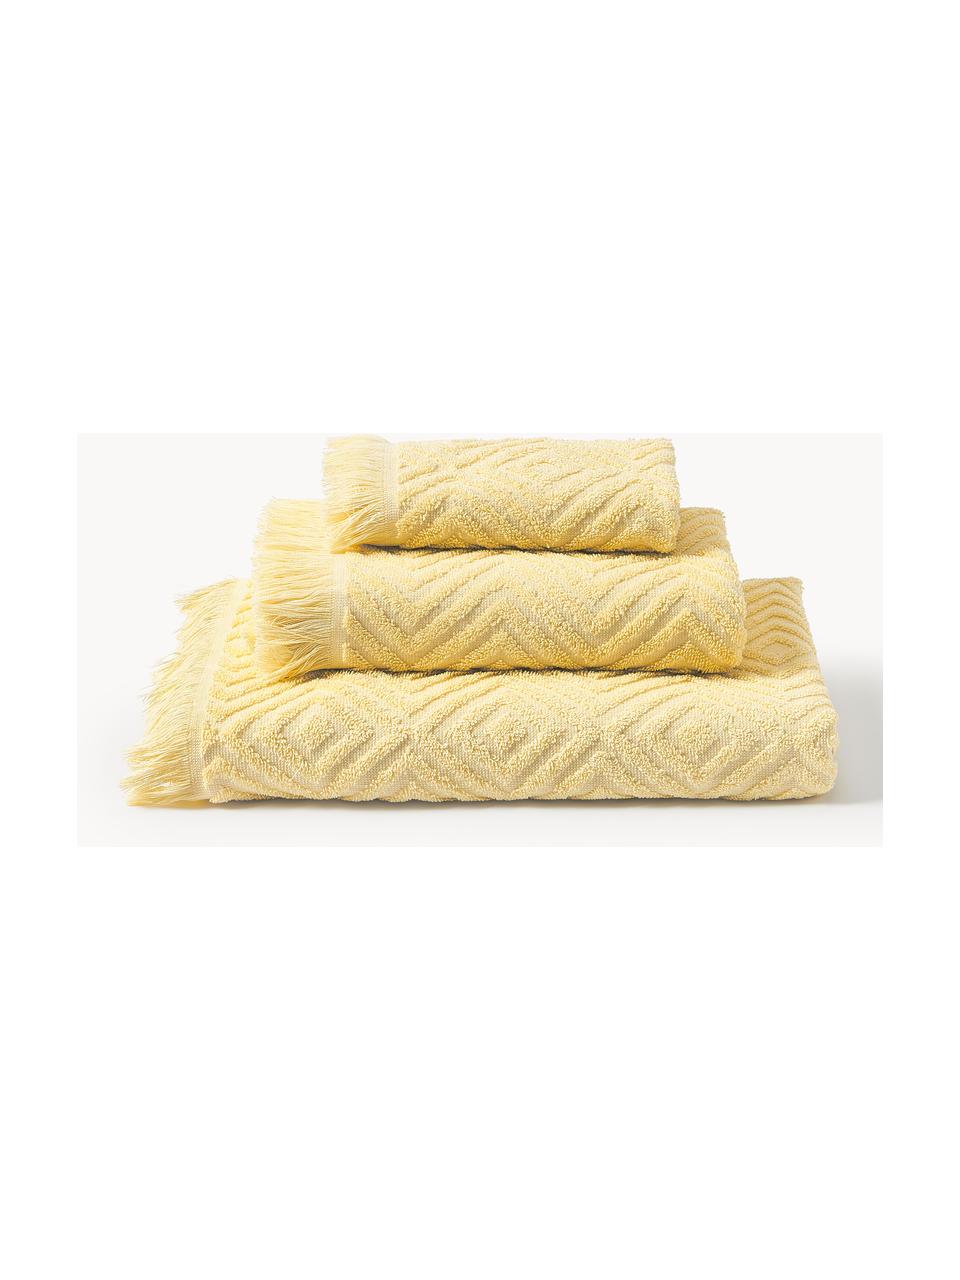 Komplet ręczników Jacqui, różne rozmiary, Jasny żółty, Komplet z różnymi rozmiarami